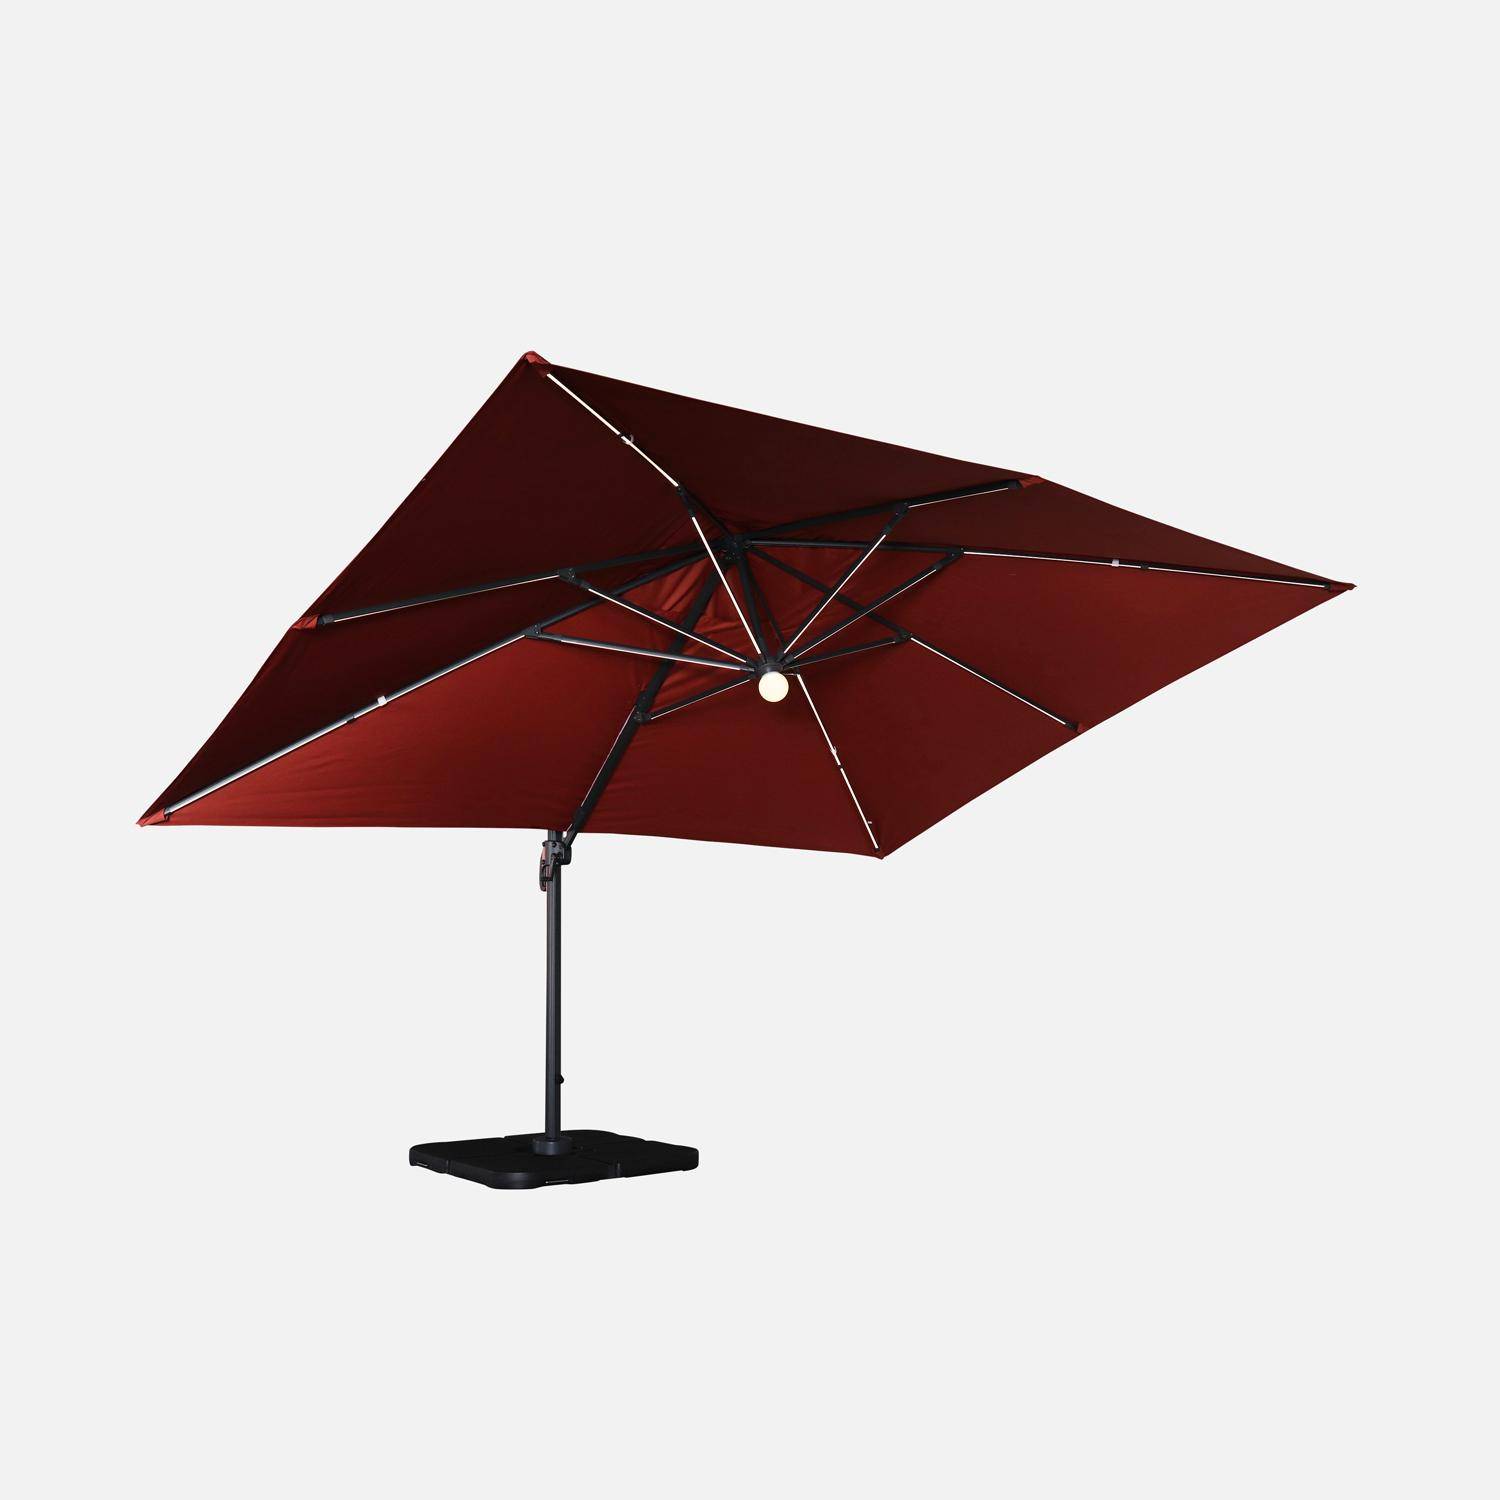 Guarda-sol rectangular 3 x 4 m - Luce Terracotta - Chapéu de chuva excêntrico inclinado, dobrável e rotativo 360° com carregador solar Photo4